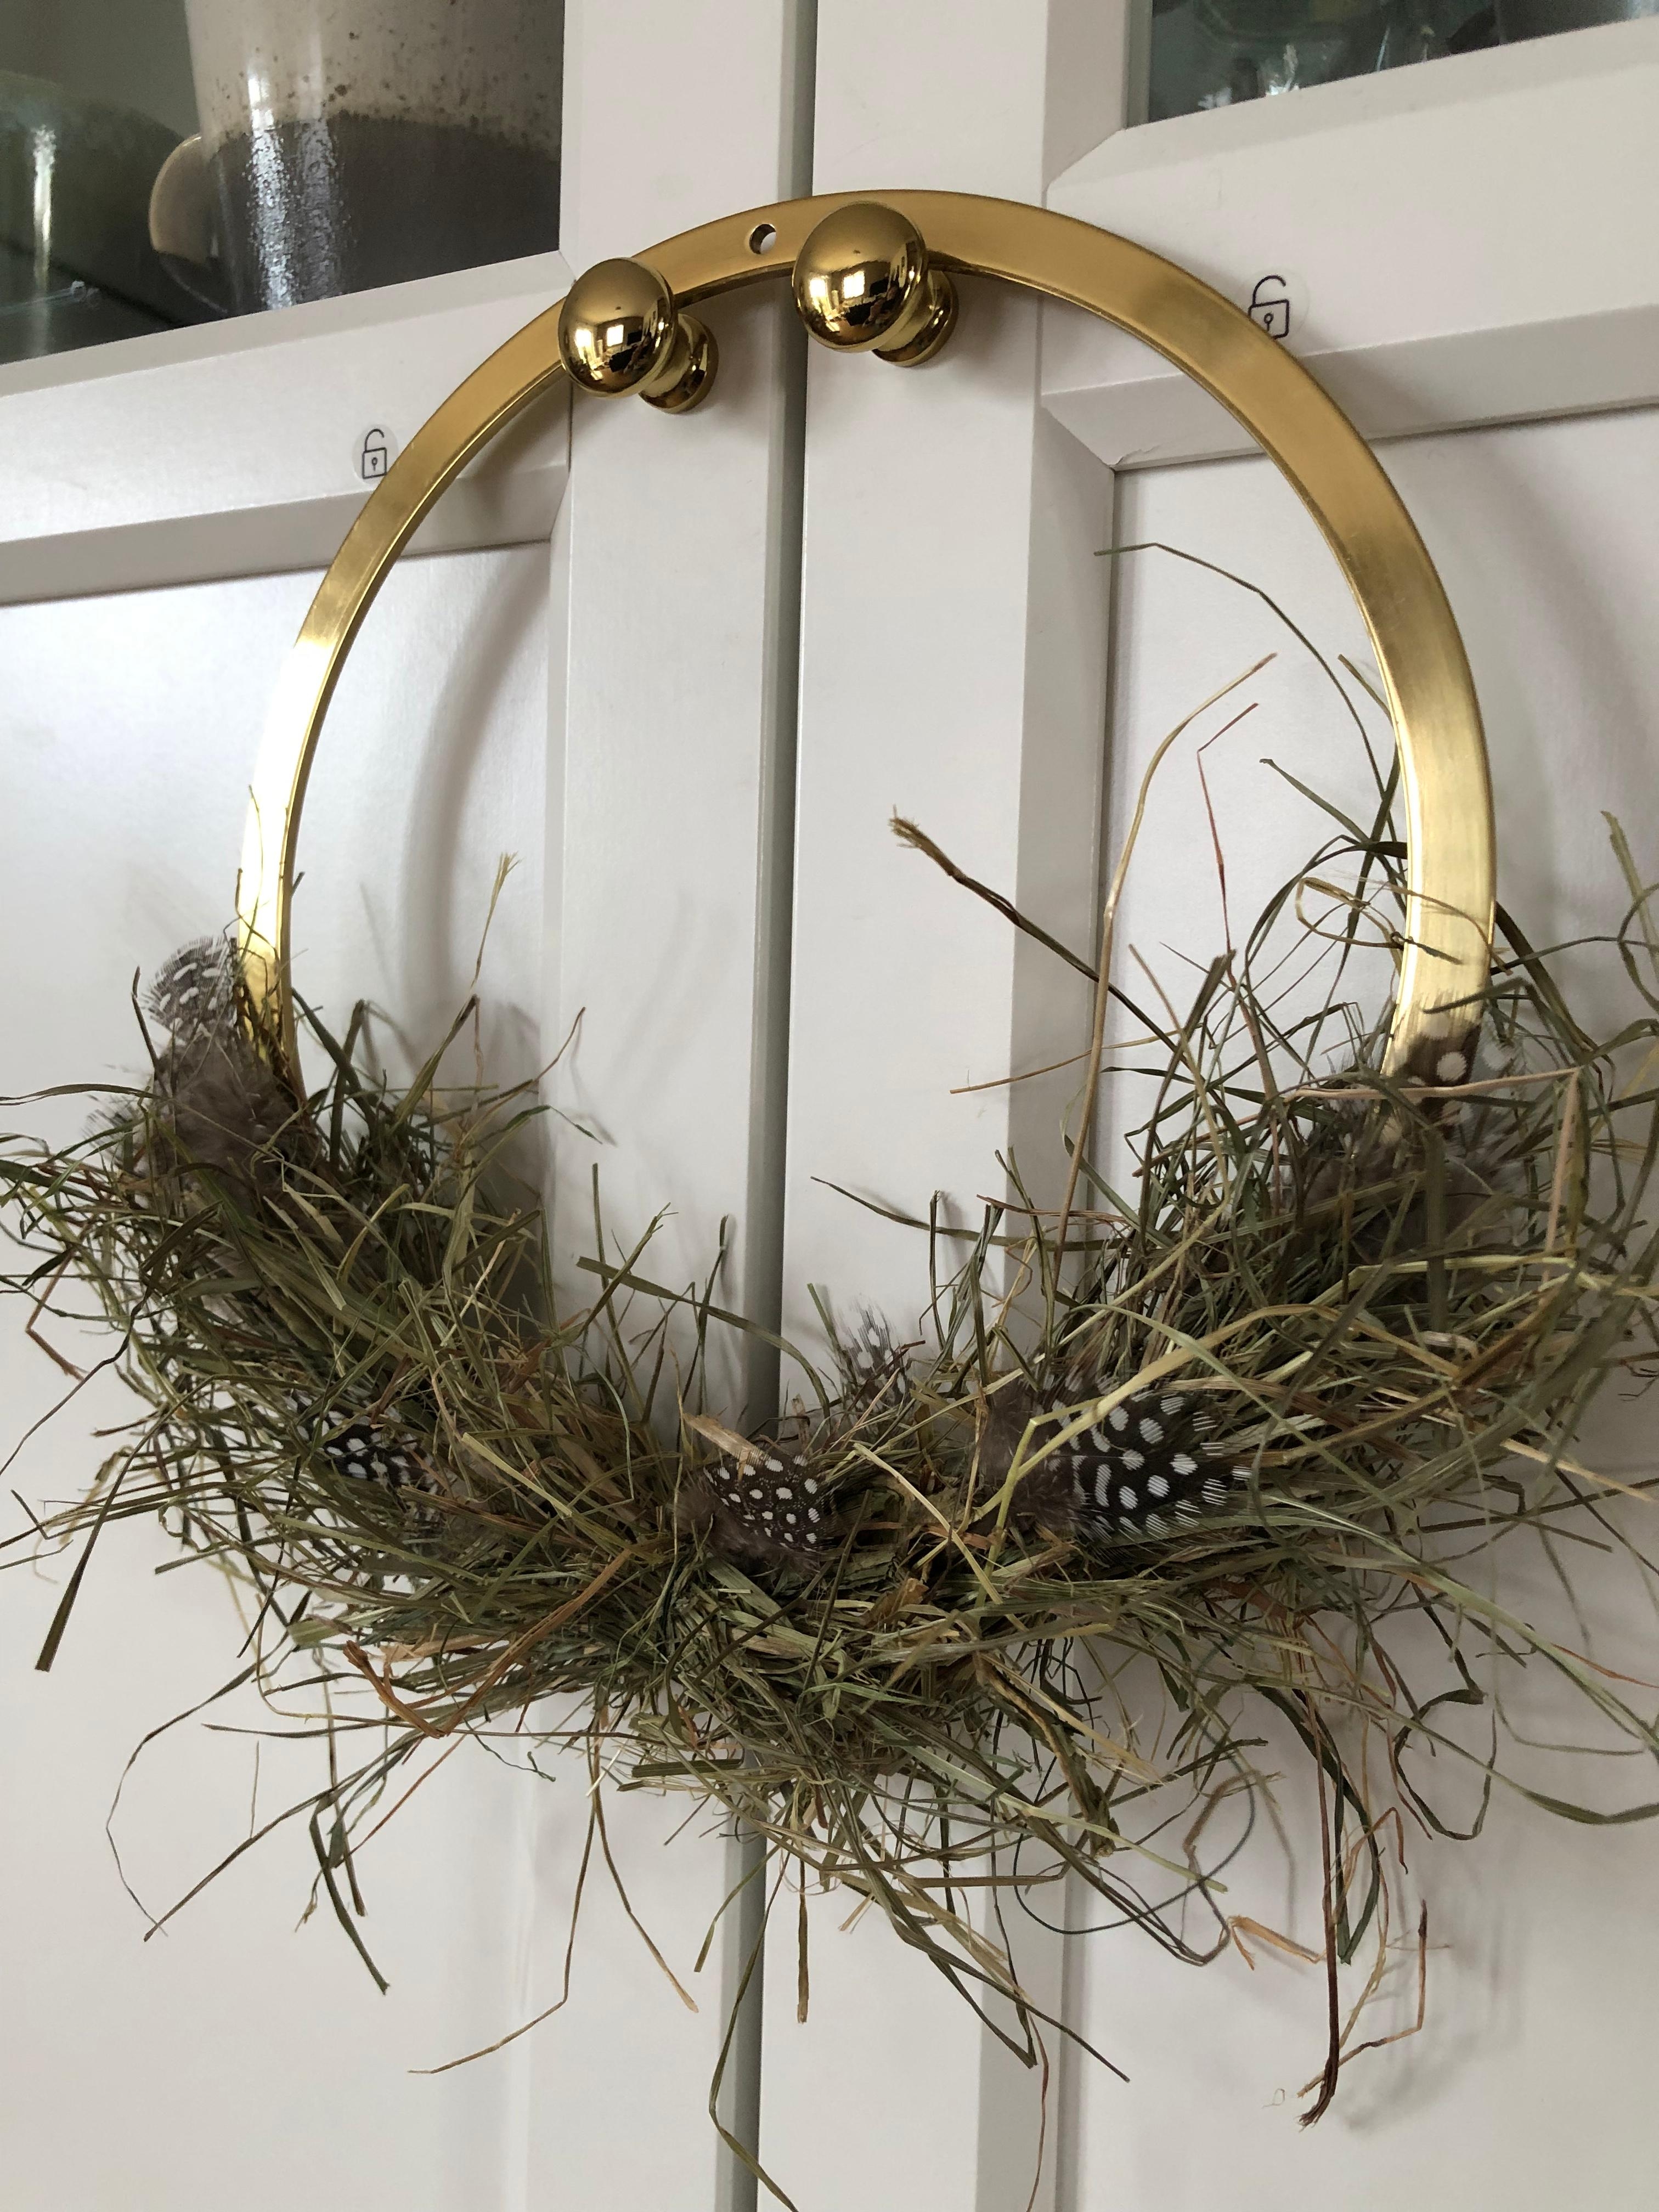 Ostergras und Federn. #wreath #messingliebe #simplicity #ostern